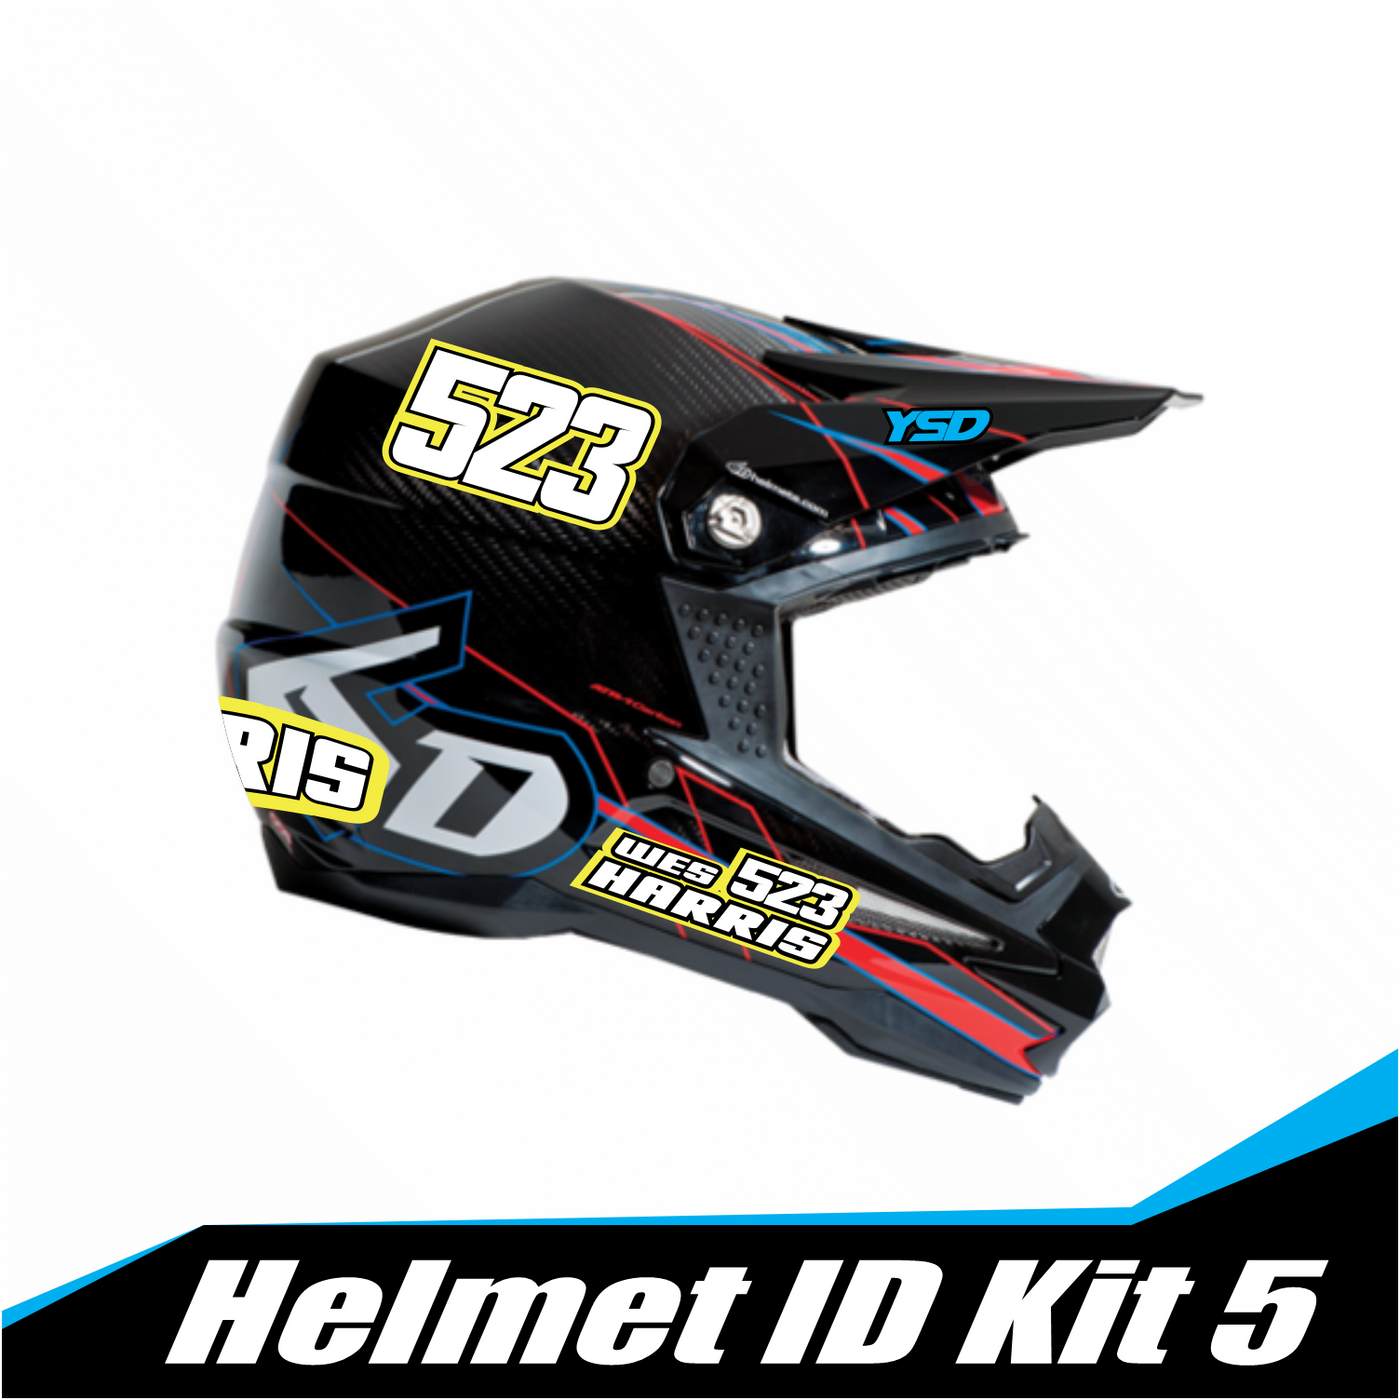 Helmet ID kit 5 - Y&S Designs, LLC